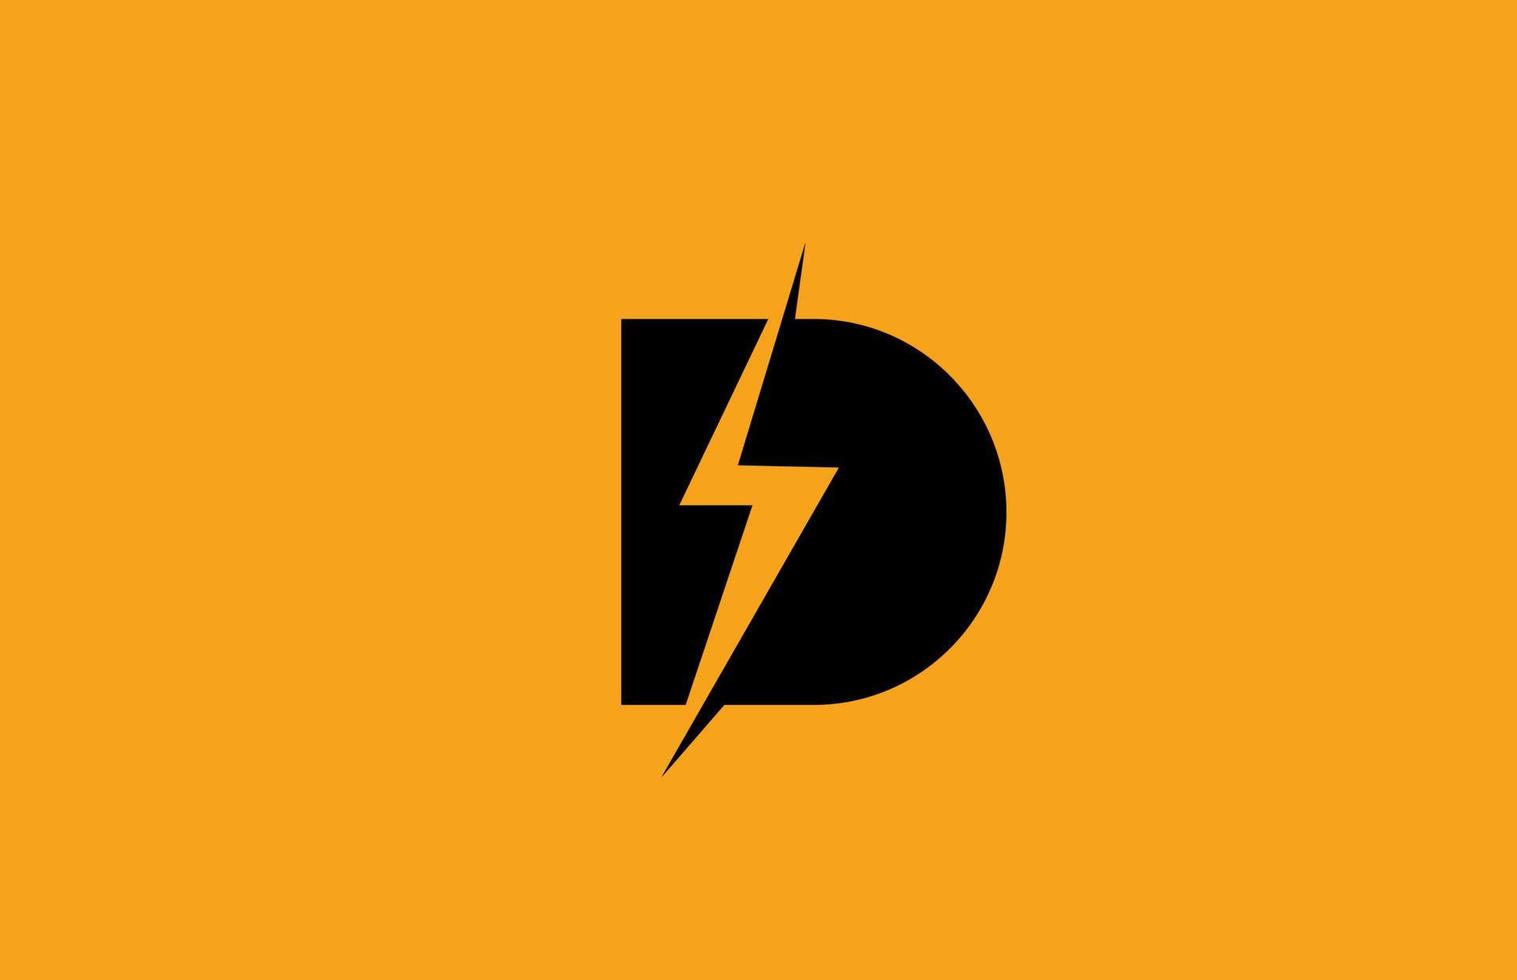 d zwart geel alfabet logo letterpictogram. elektrisch bliksemontwerp voor stroom- of energiebedrijven vector